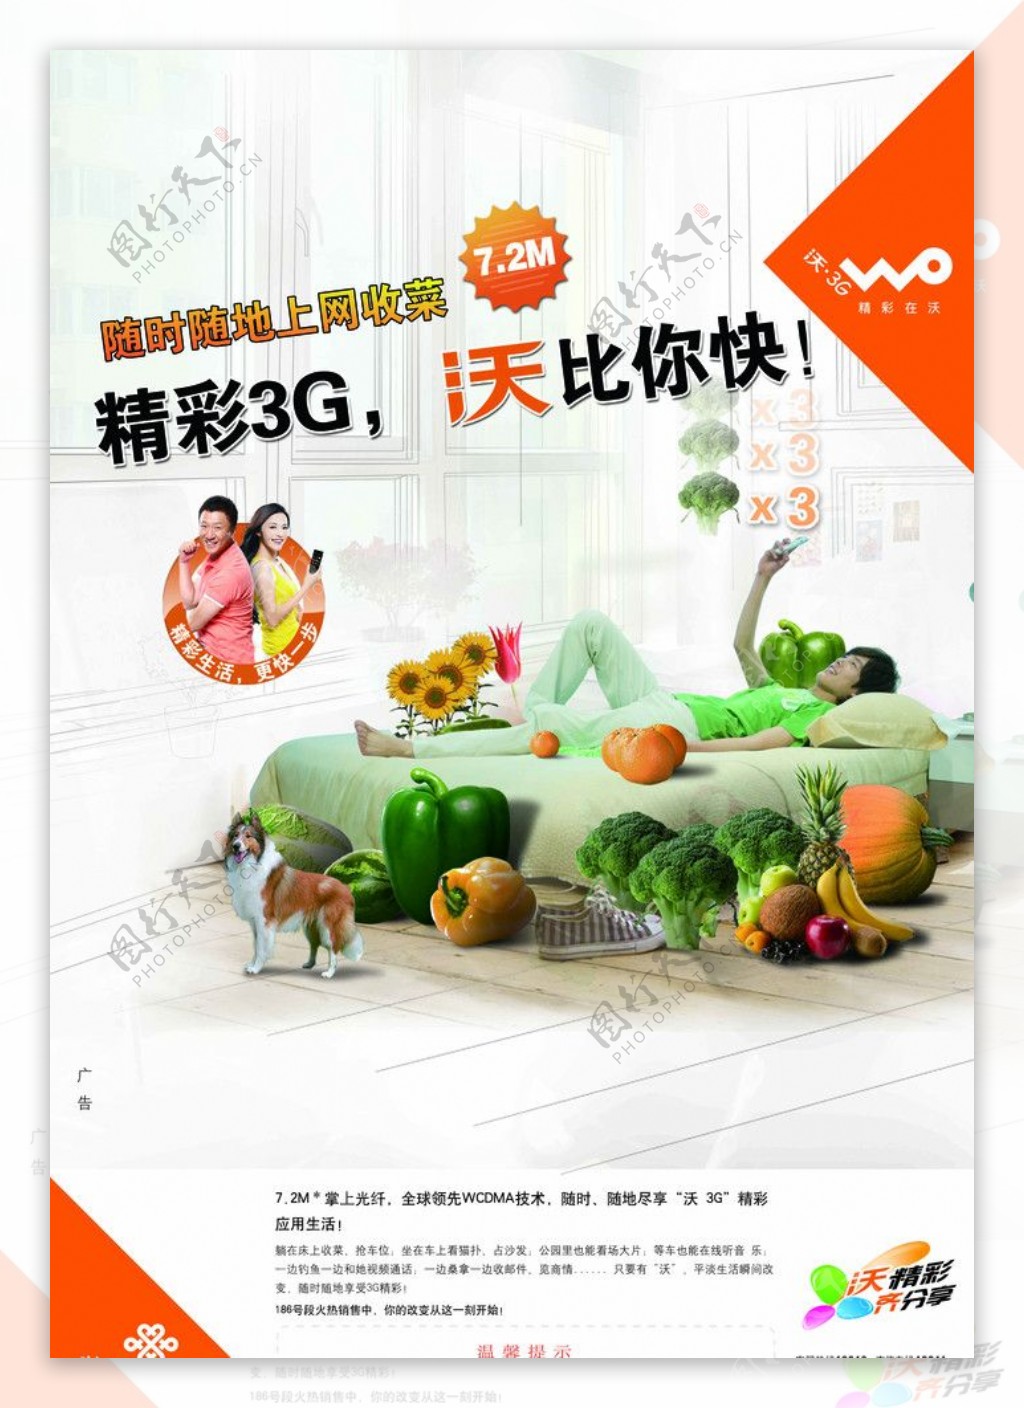 中国联通3G手机上网偷菜篇图片